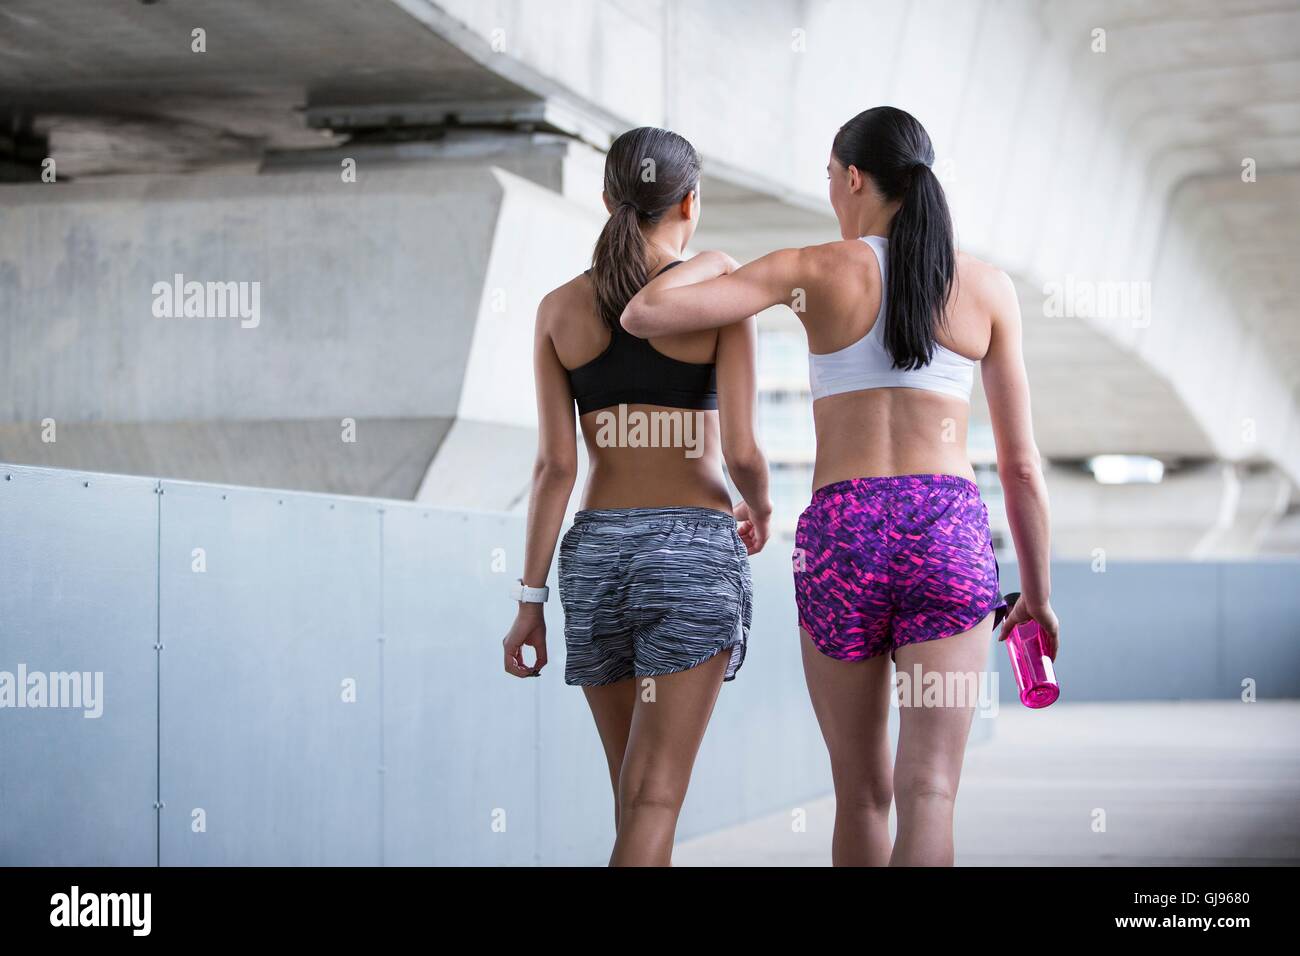 MODEL RELEASED. Two young women in sports wear walking away. Stock Photo